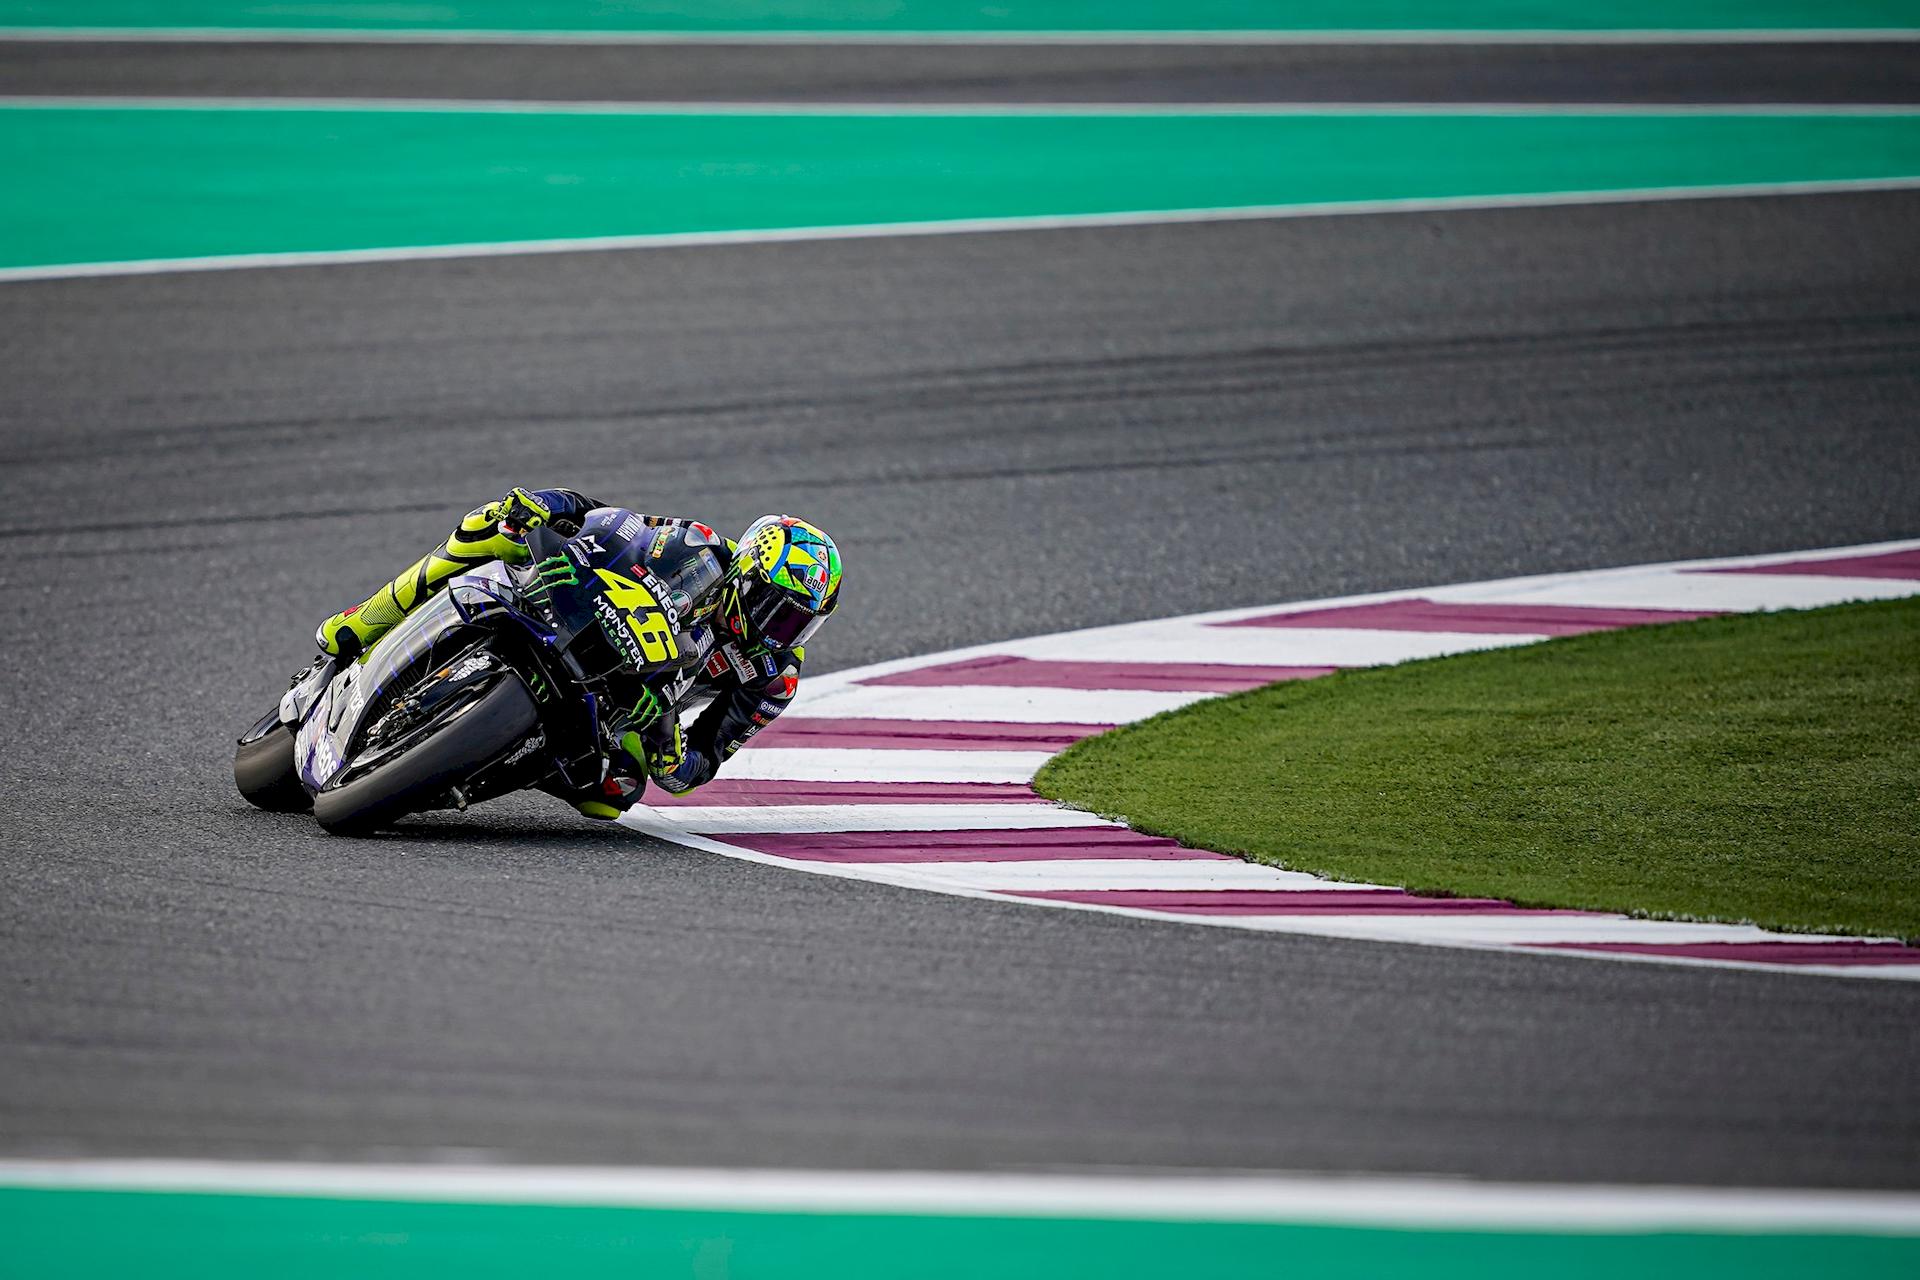 Valentino Rossi Test MotoGP Qatar